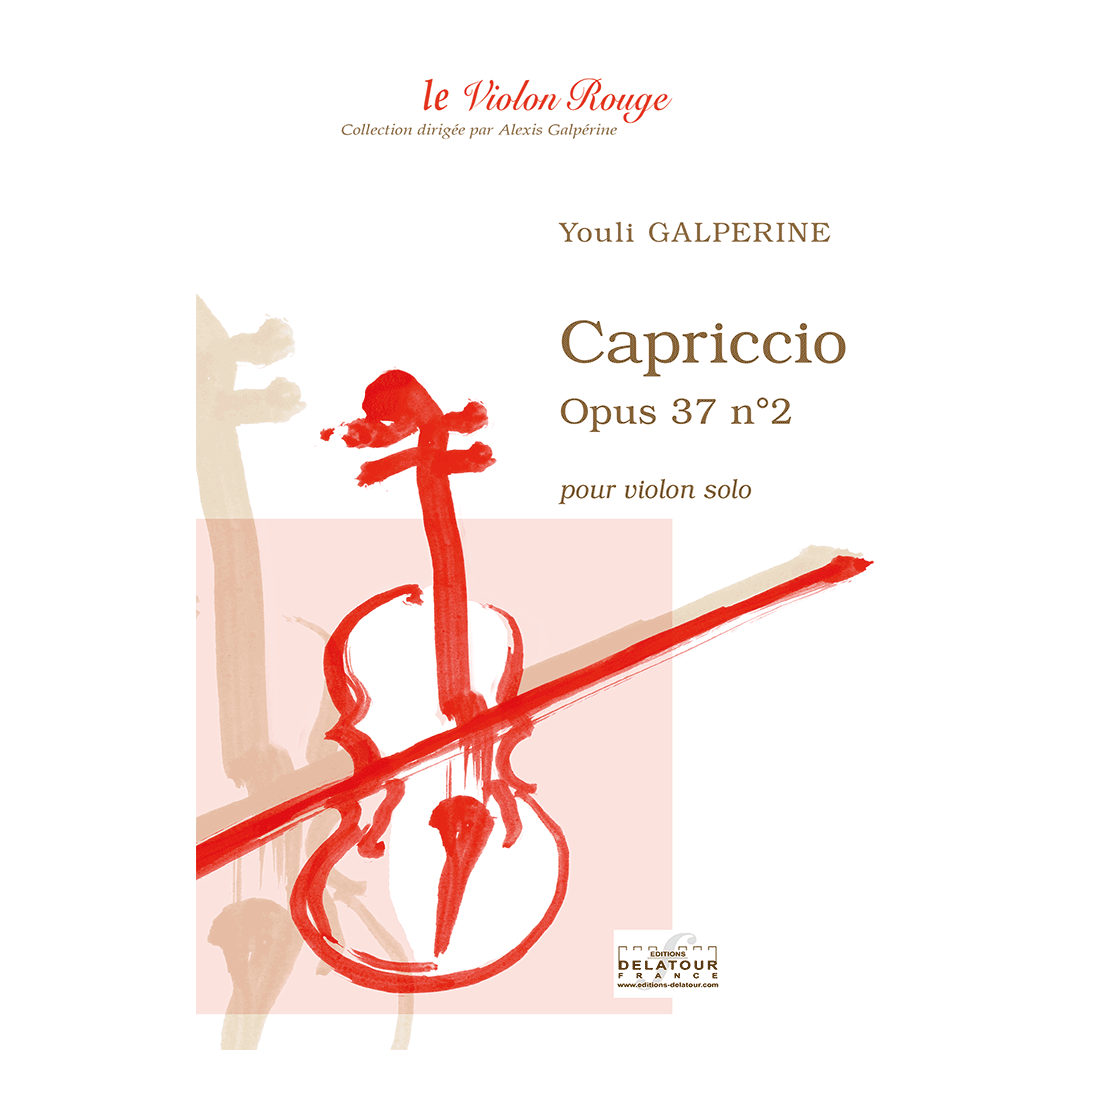 Capriccio - Opus 37 n°2 für Violine